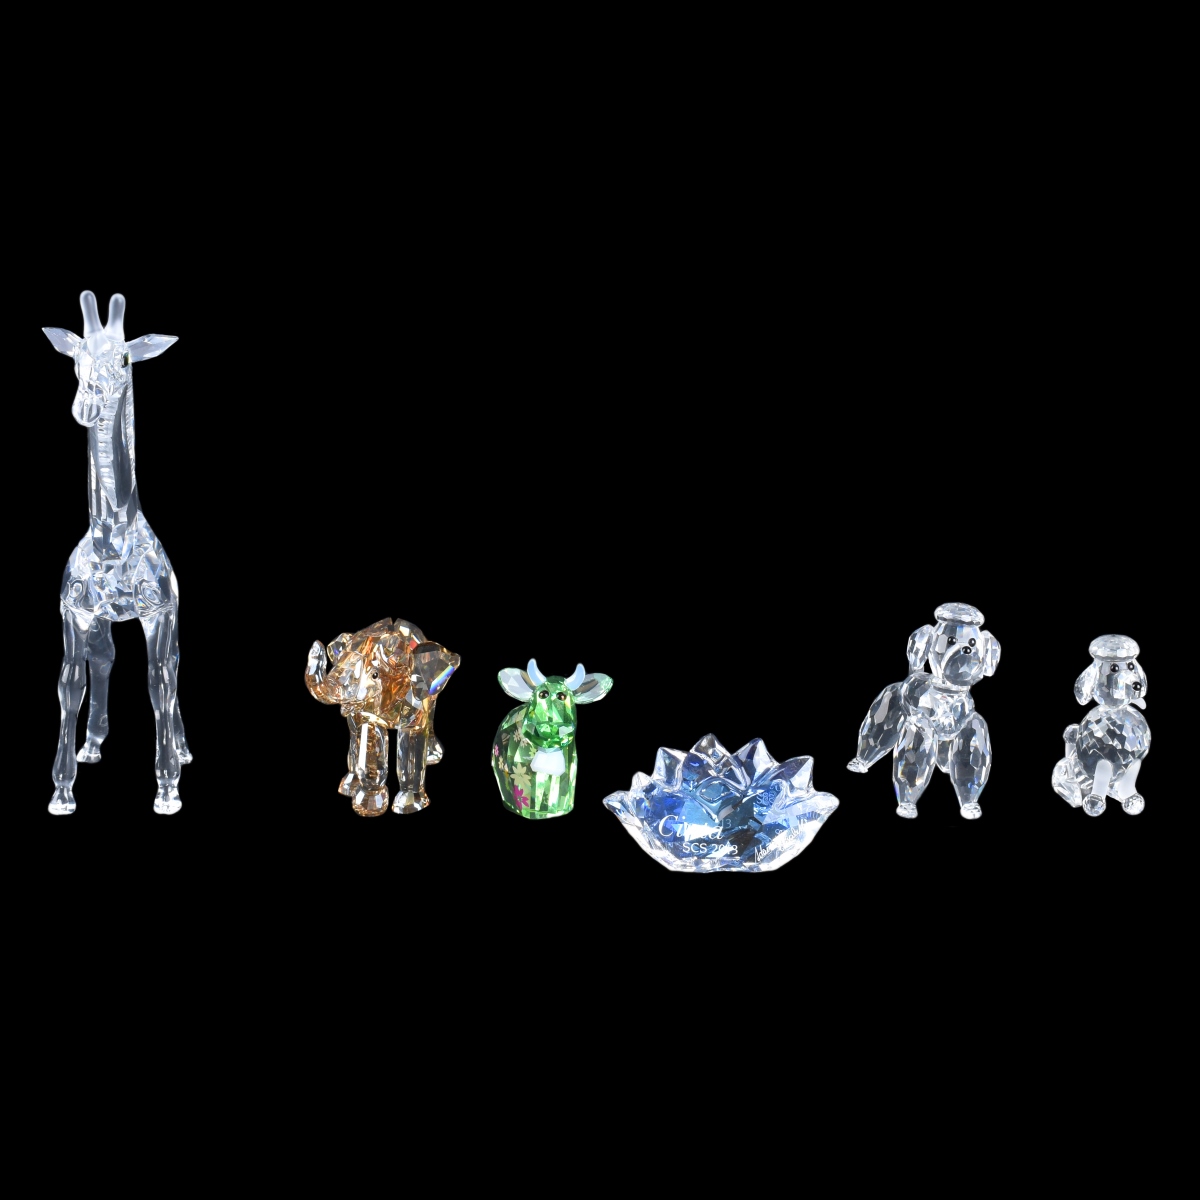 Six Swarovski Figurines